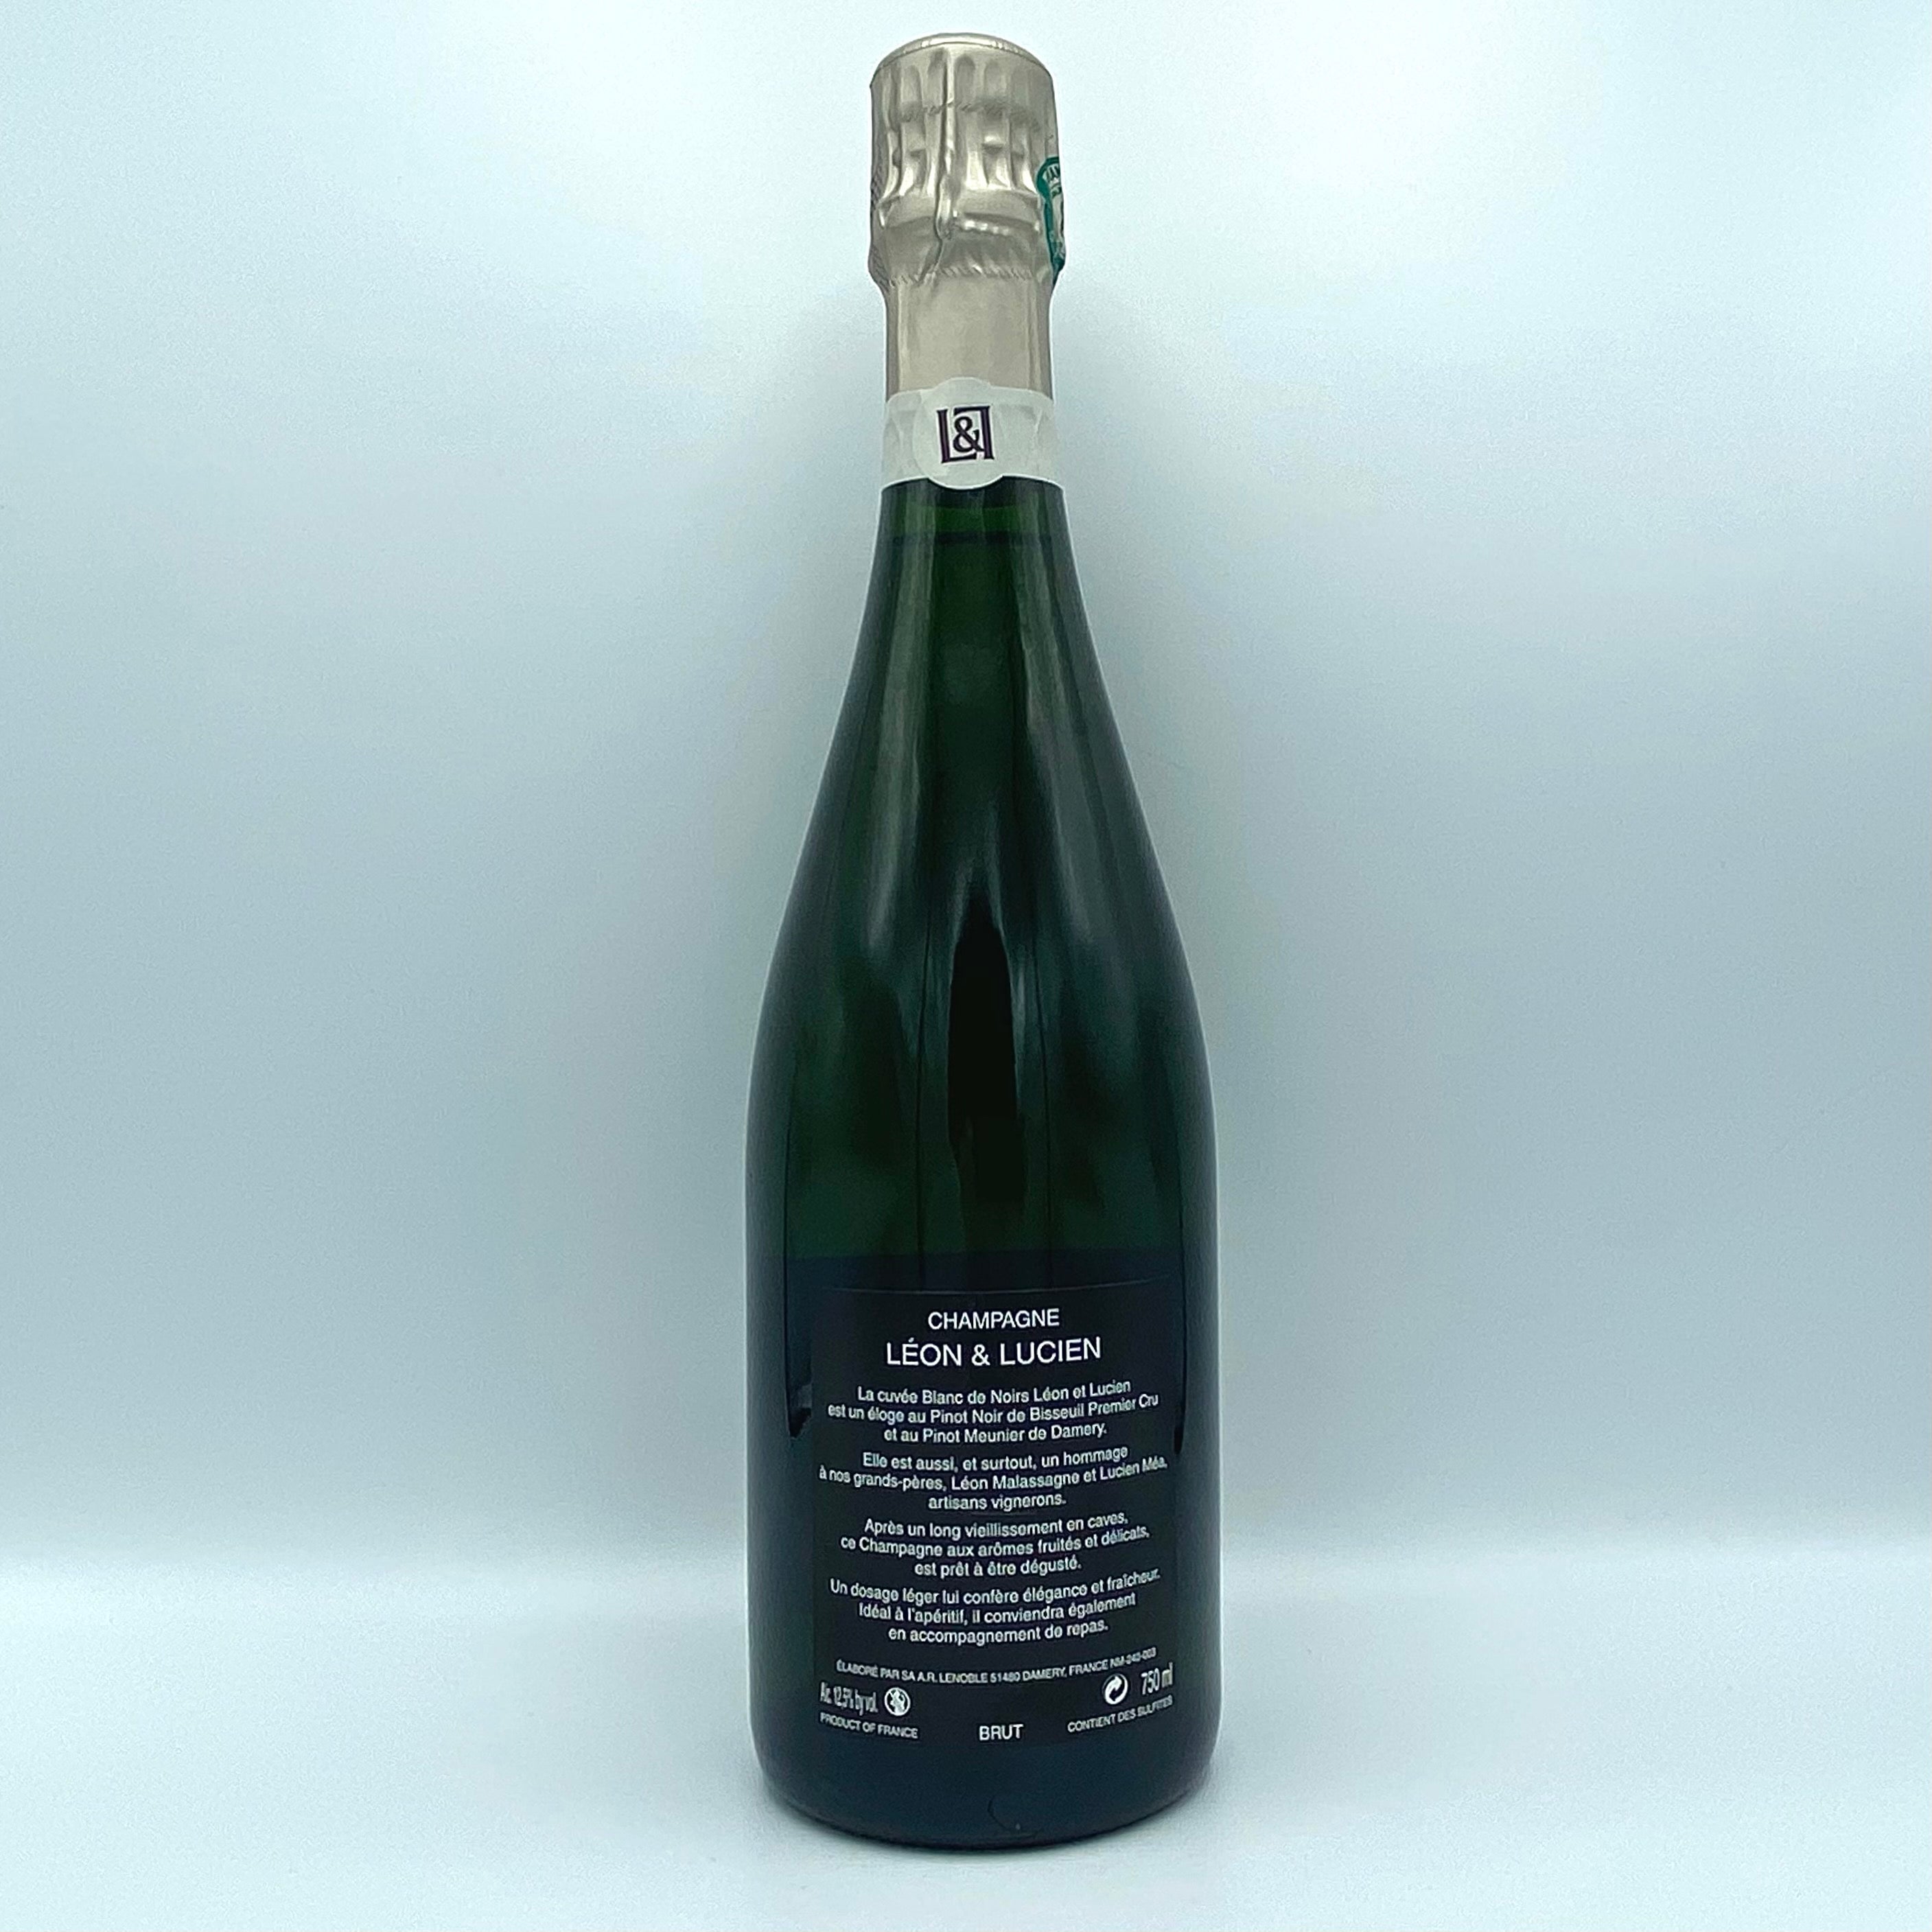 Champagne Premier Cru "Leon & Lucien Les Artisans" Blanc des Noirs Brut - AR Lenoble